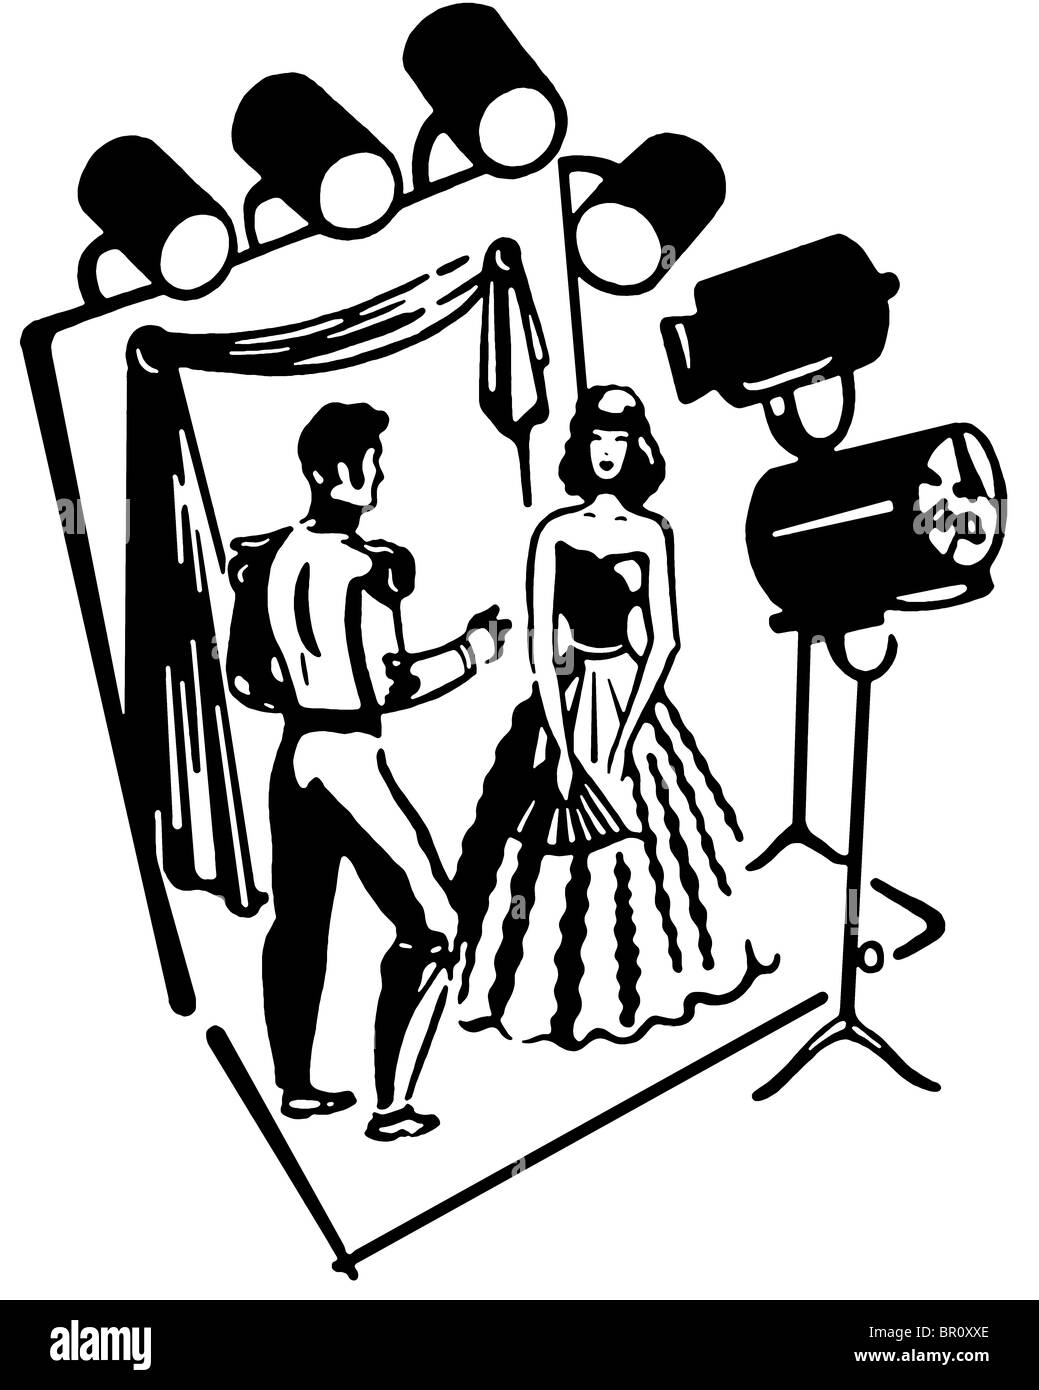 Une version noir et blanc d'un homme et femme sur une scène de théâtre ensemble Banque D'Images